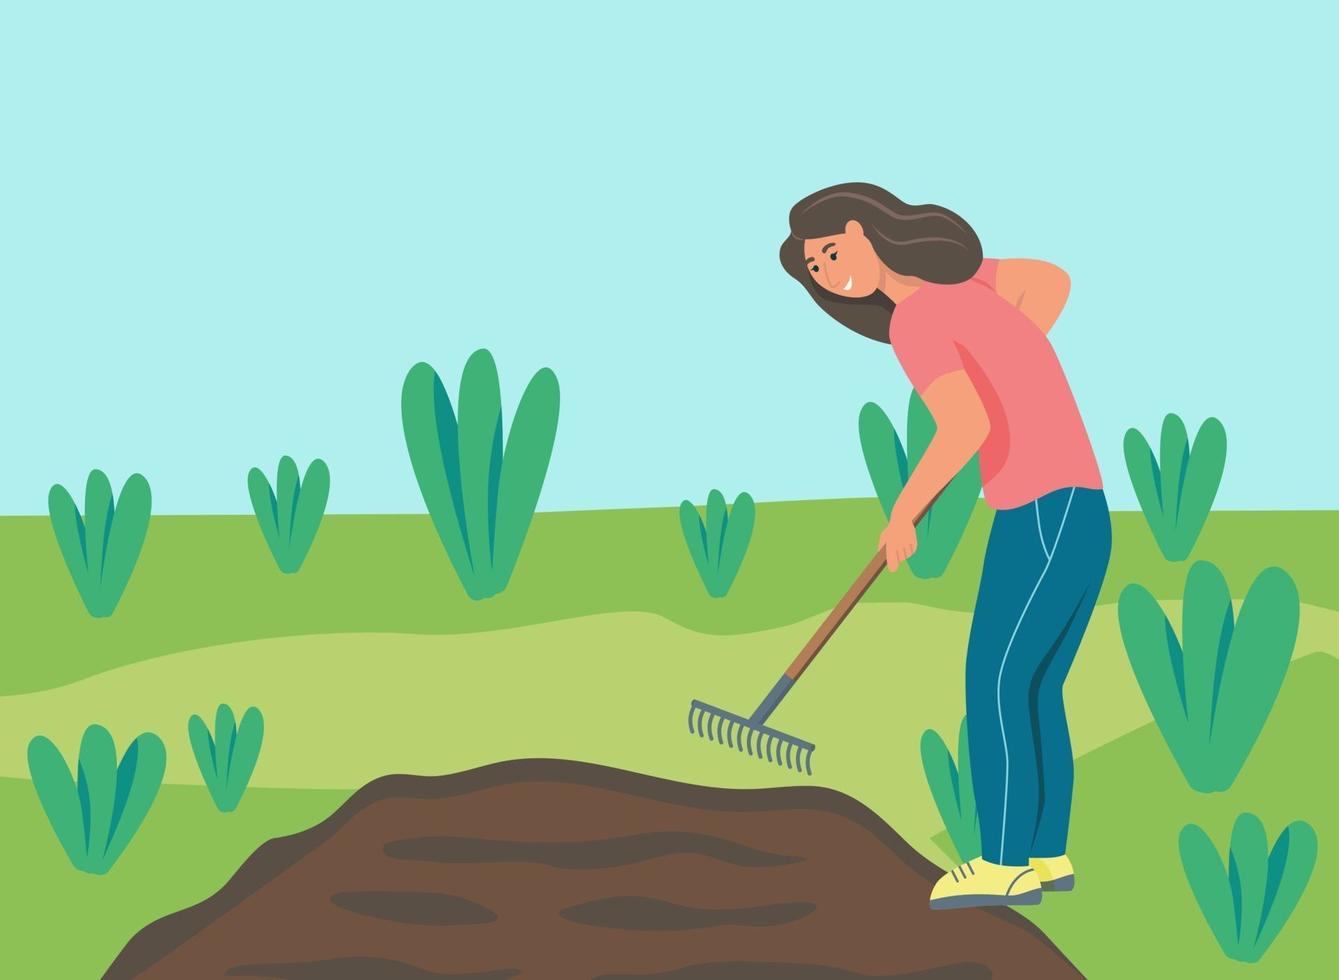 trabajos de jardinería. una mujer joven está trabajando en el jardín, rastrillando el suelo. ilustración vectorial plana. vector